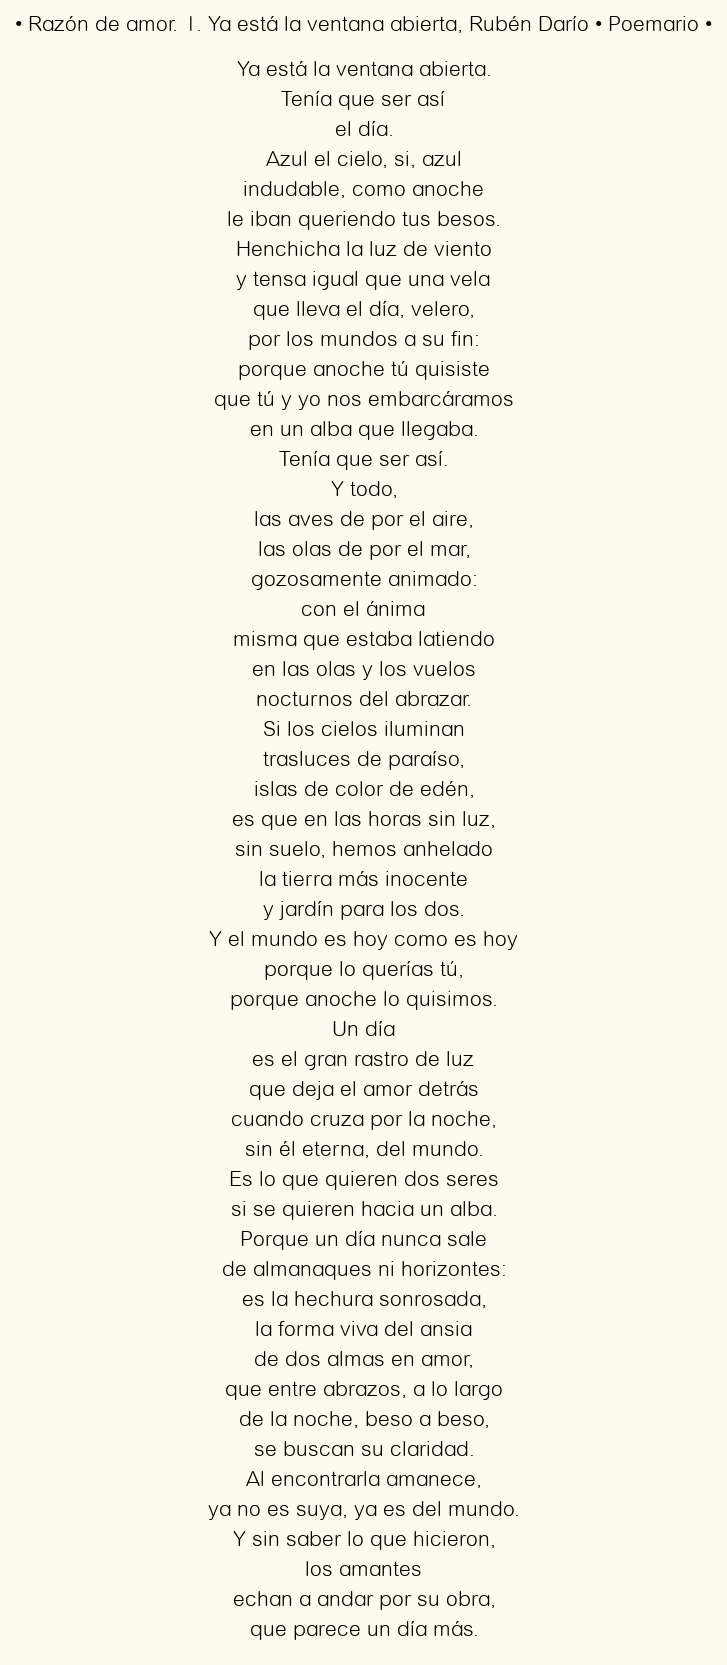 Imagen con el poema Razón de amor. 1. Ya está la ventana abierta, por Pedro Salinas